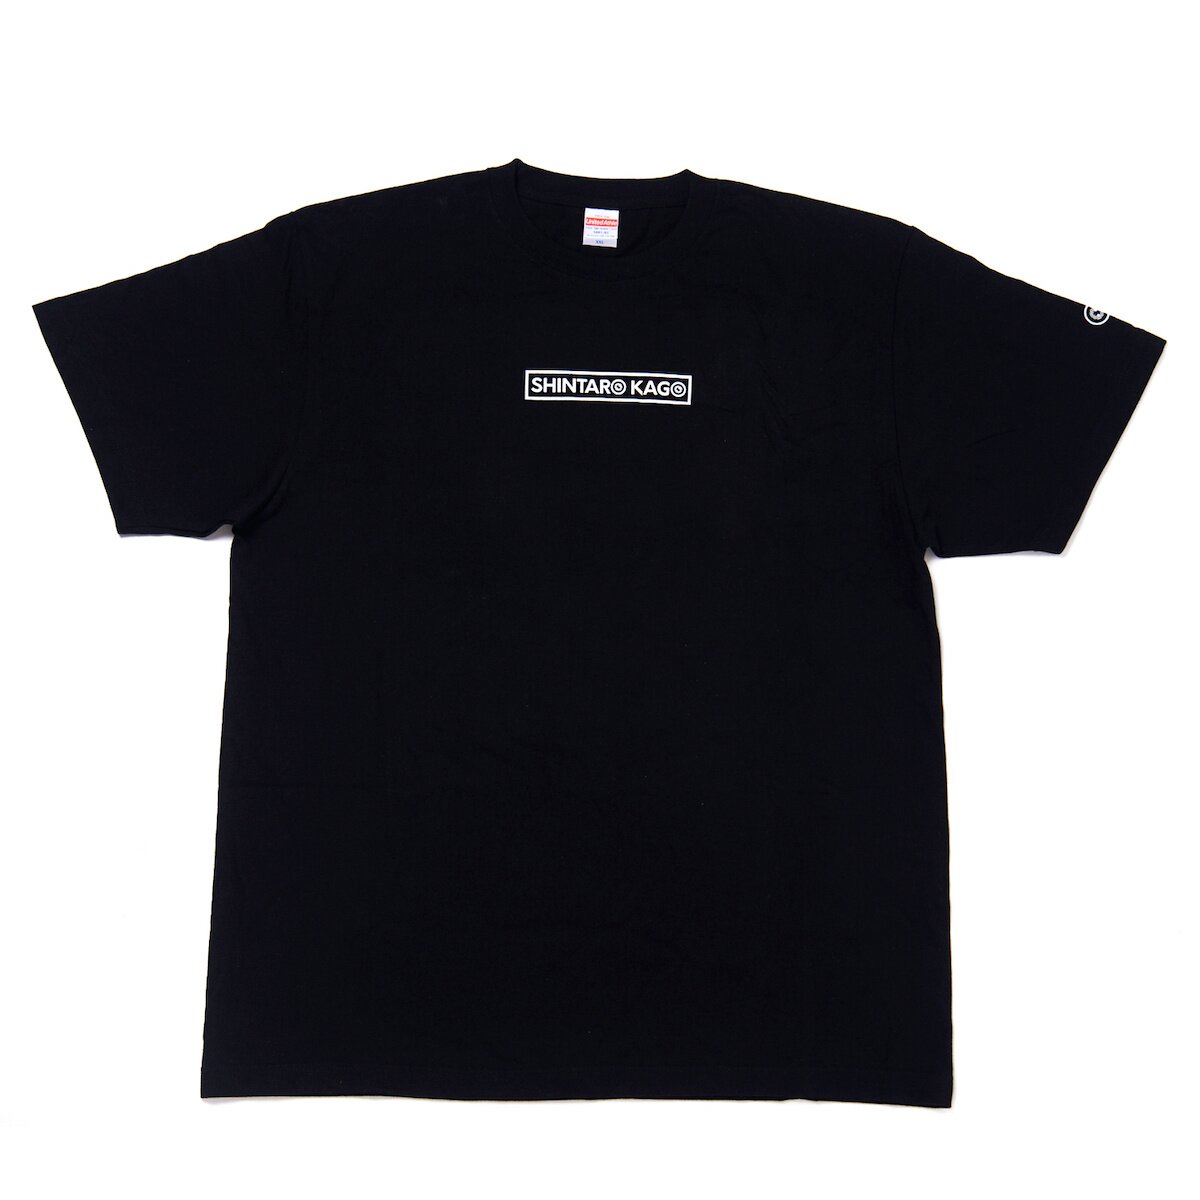 Shintaro Kago Black T-Shirt - Tokyo Otaku Mode (TOM)